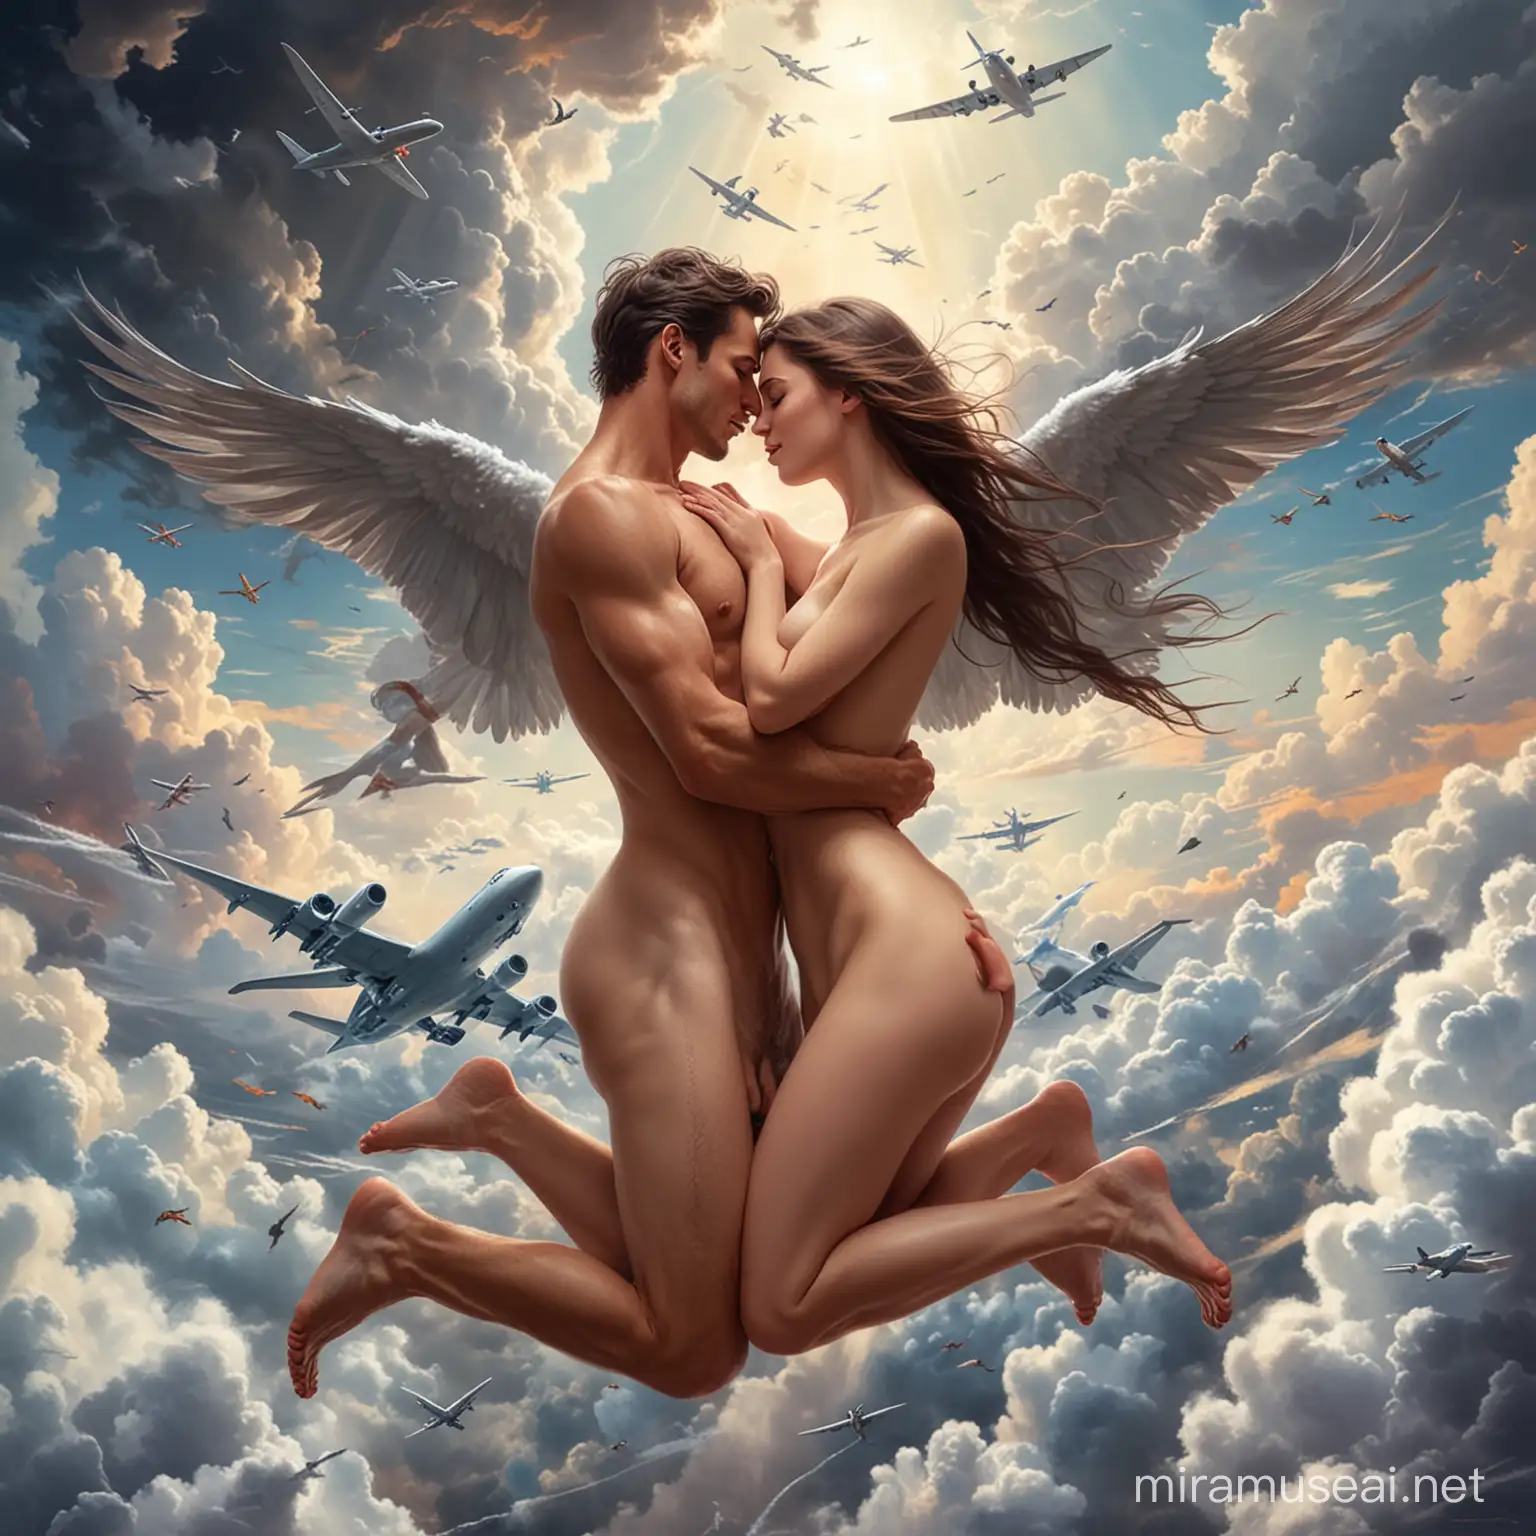 Pasangan romantis. Mereka berdua telanjang. Mereka sedang bersetubuh di awan. Di sekitar ada pesawat terbang dan burung-burung.
